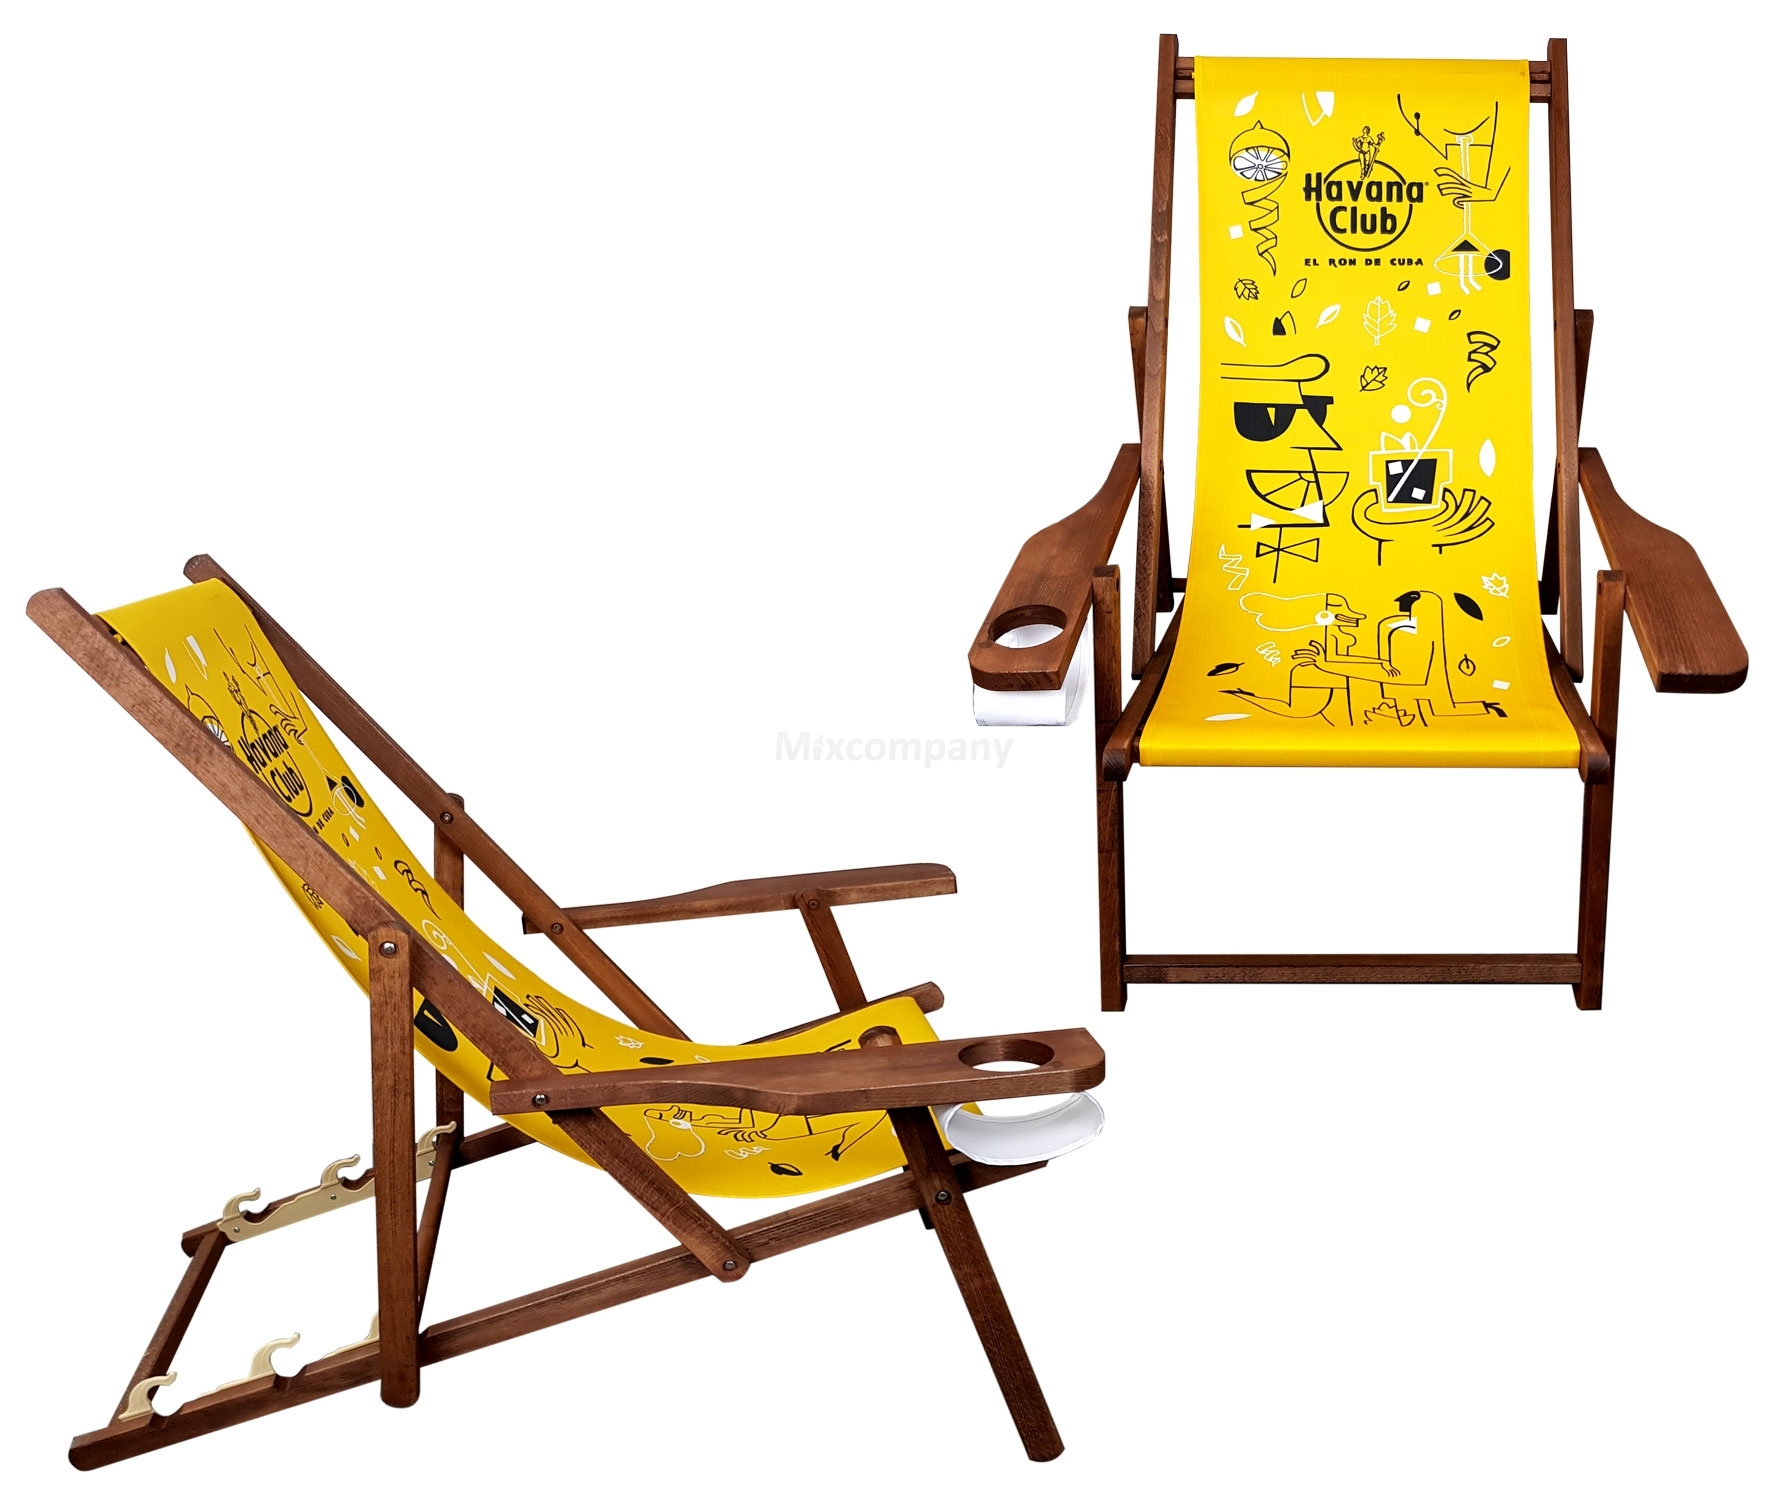 Havana Club Liegestuhl Stuhl aus Holz Gartenliege Klappstuhl gelb